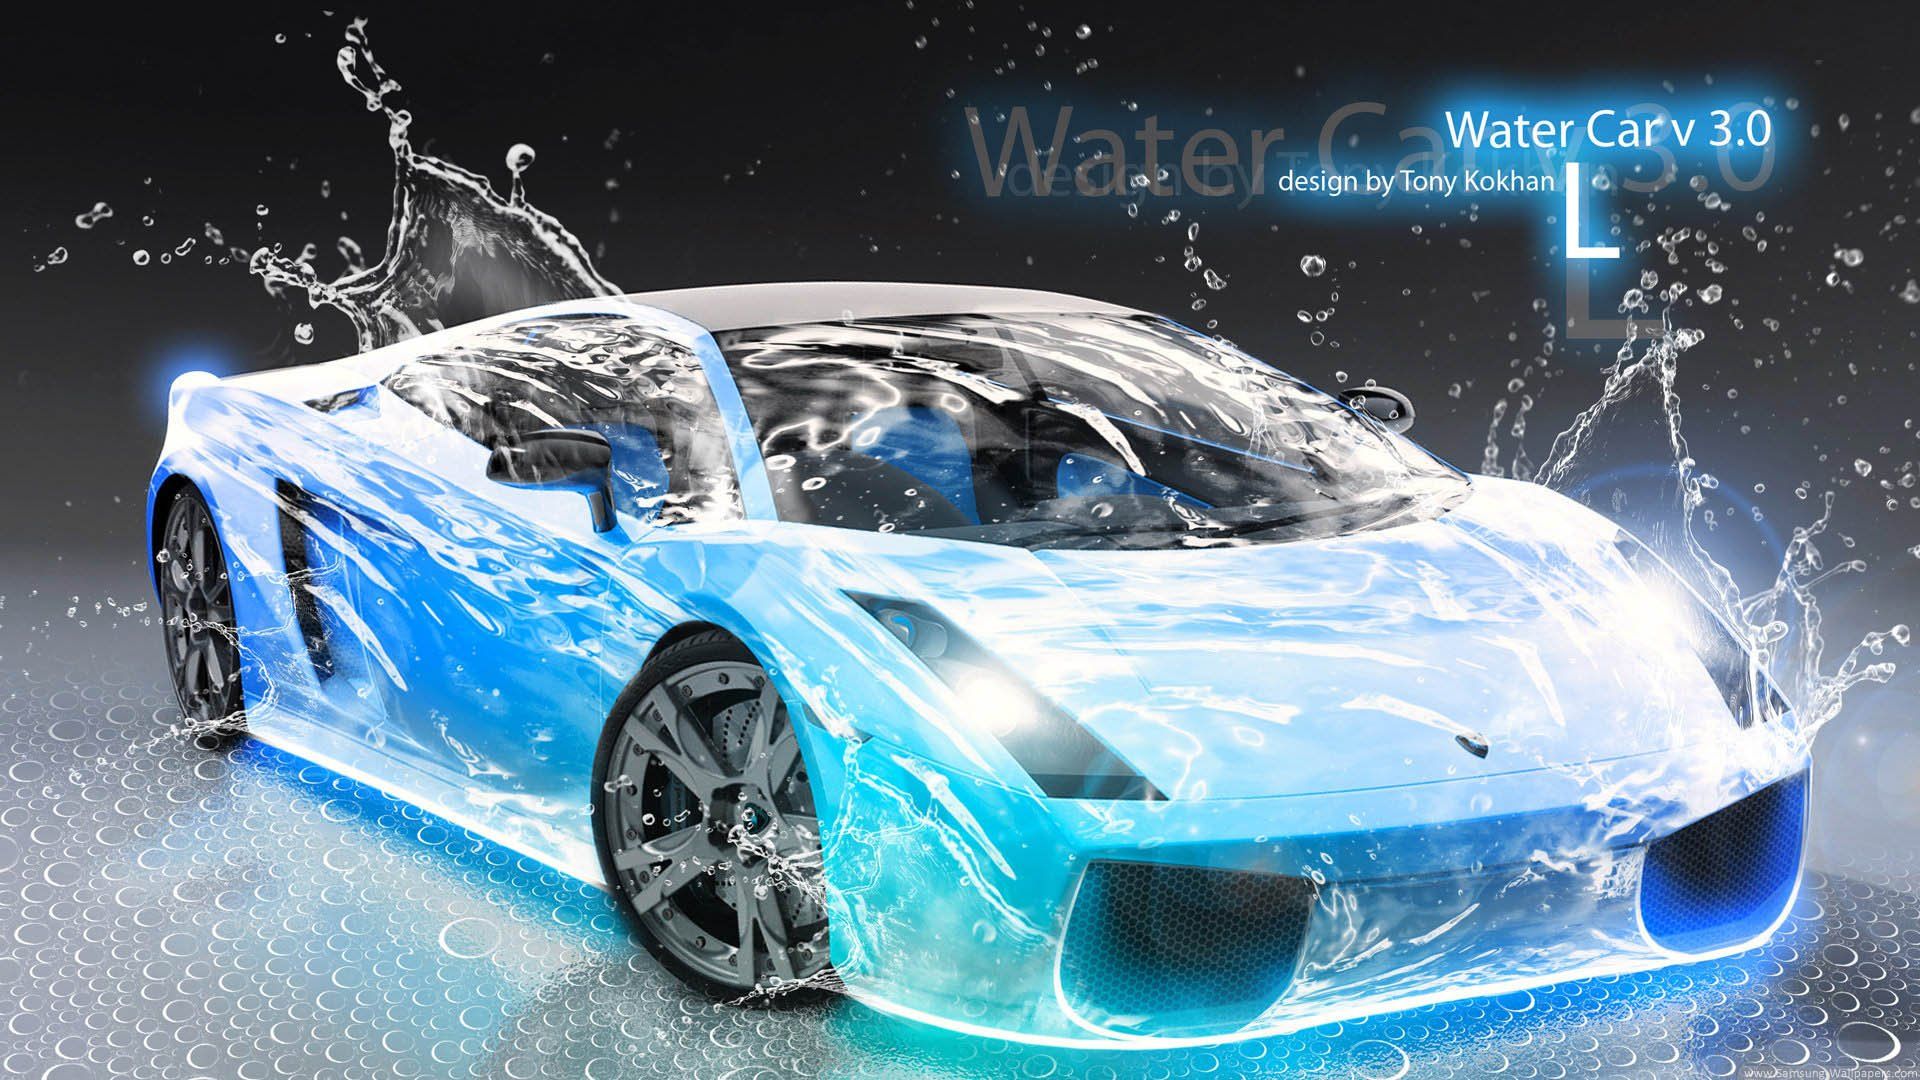 Blue Lamborghini Wallpapers Mobile - Vehicles: Nếu bạn là một tín đồ của những chiếc siêu xe đầy uy lực và đẳng cấp, hãy xem bức ảnh này để thấy sự kết hợp hoàn hảo giữa màu xanh rực rỡ và vẻ đẹp điển trai của Lamborghini, đặc biệt là trên màn hình điện thoại của bạn.